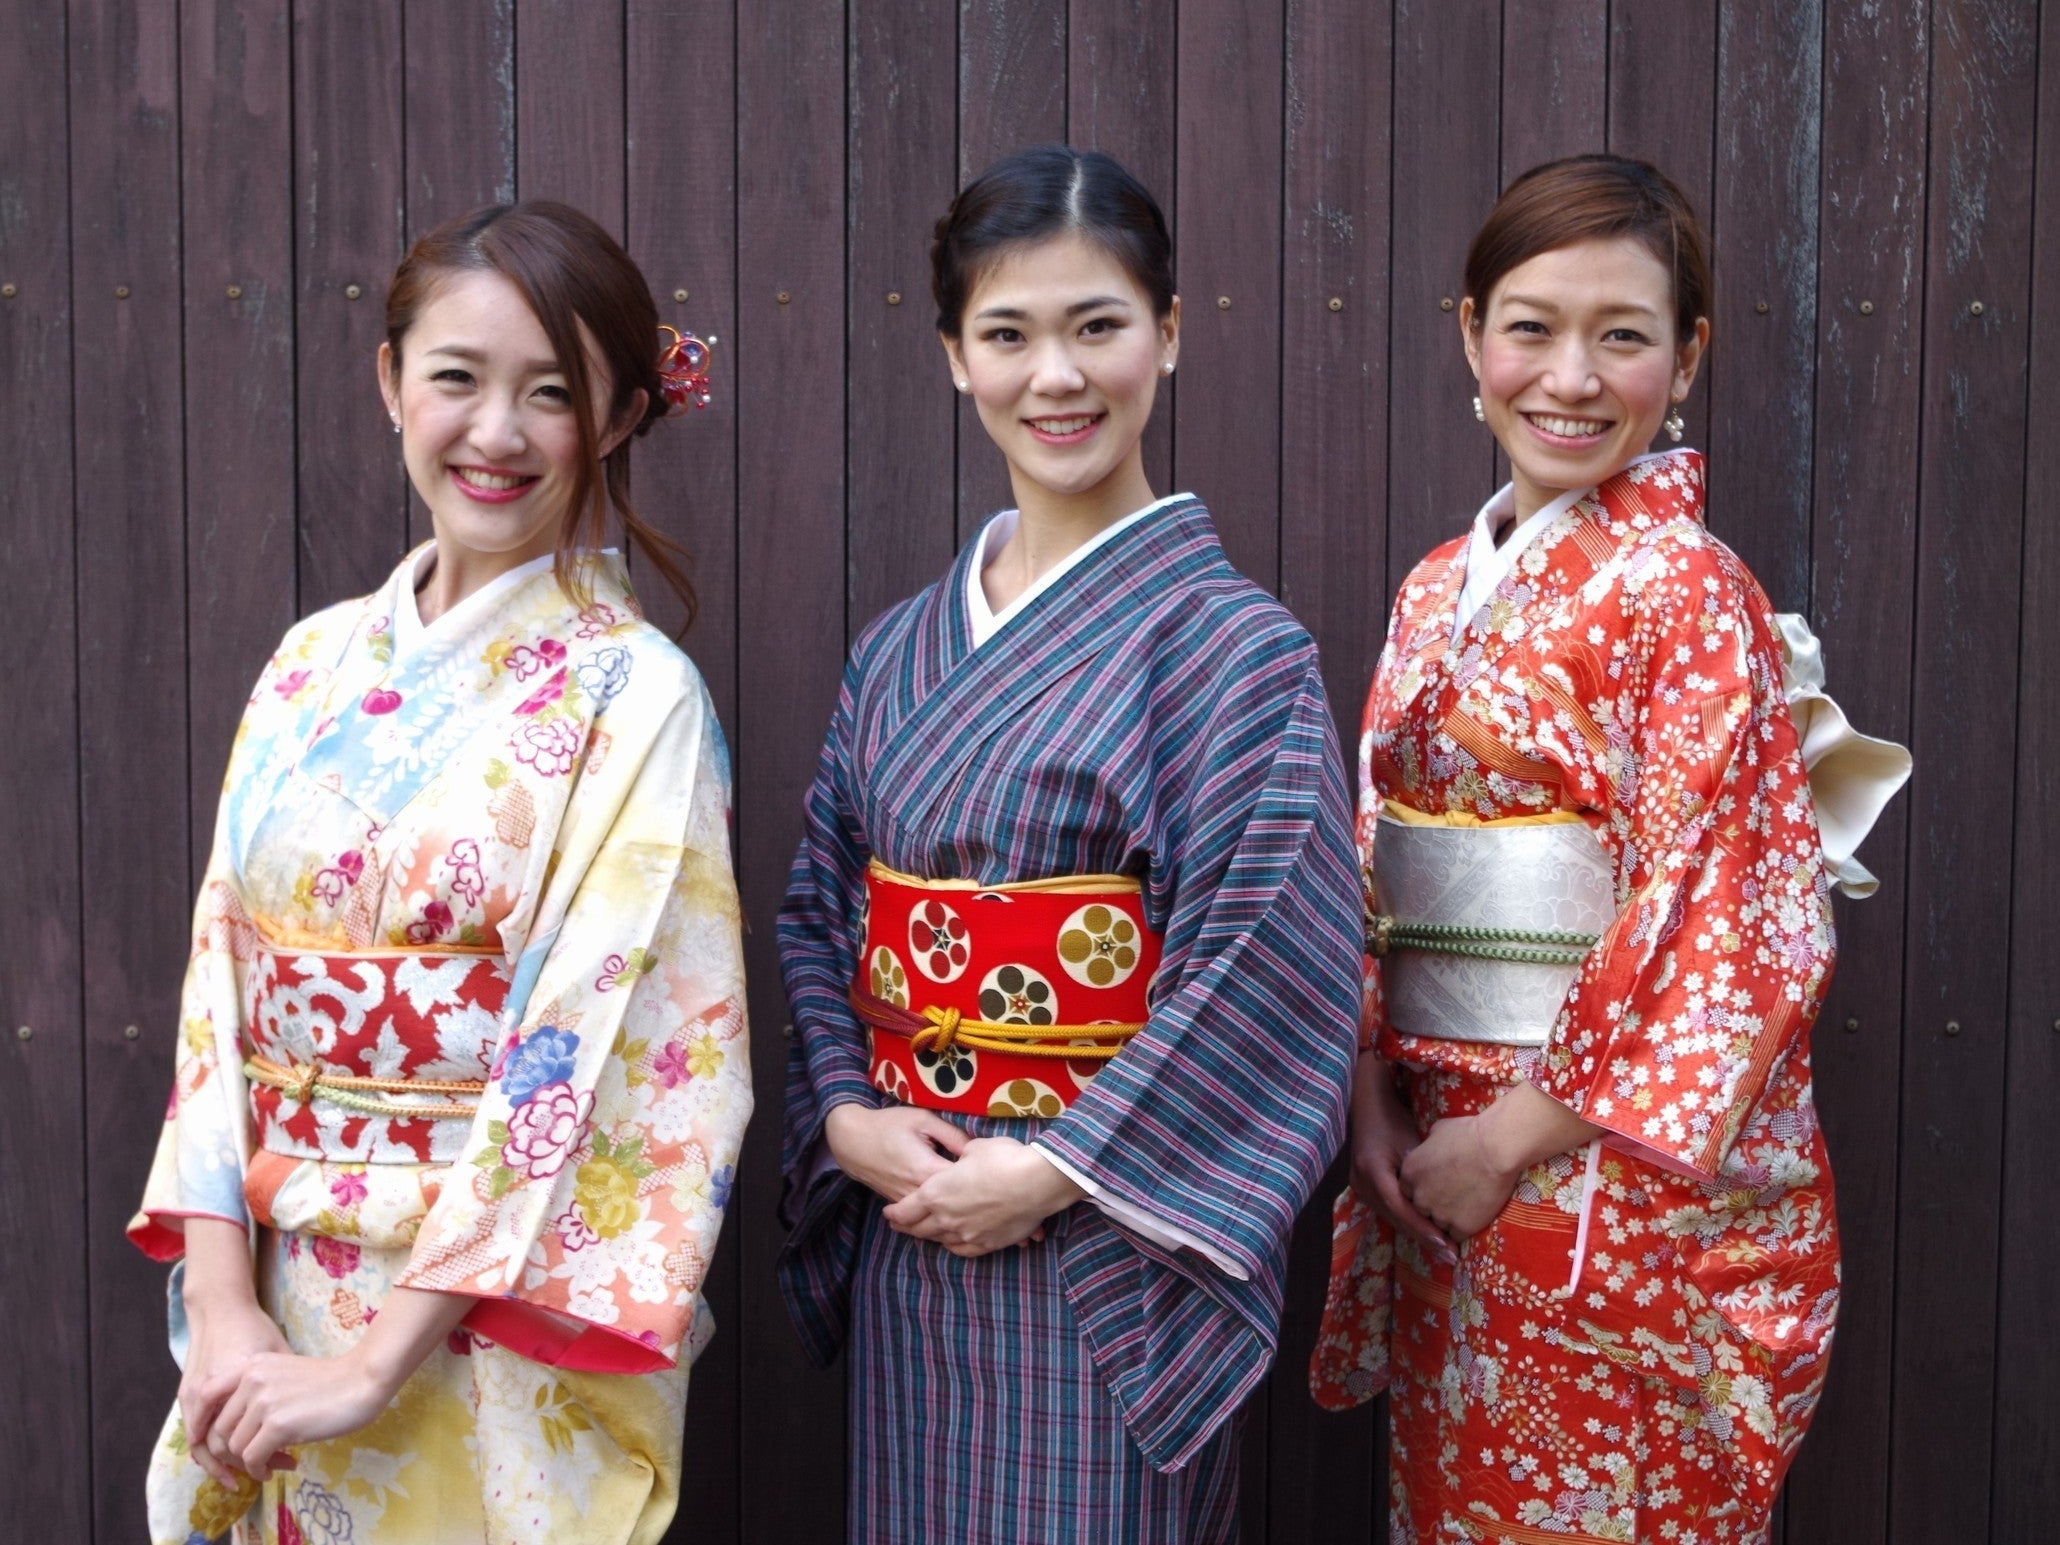 Japanese Kimono Handbags are made from - Jalan Jalan Japan